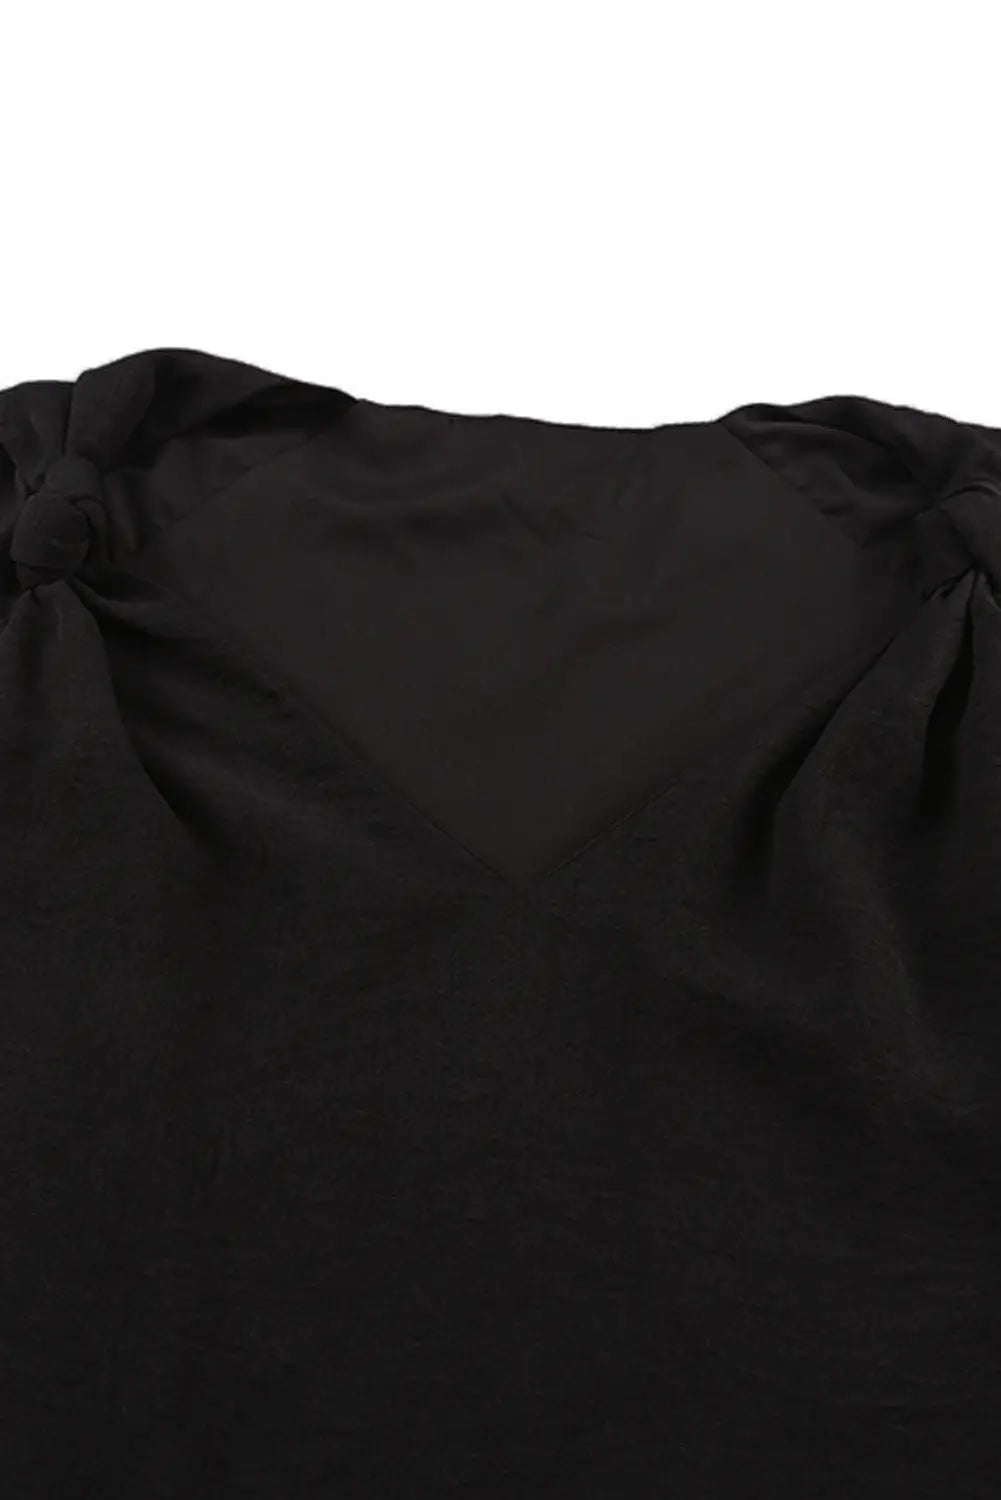 Black v neck knotted shoulder vest - tank tops